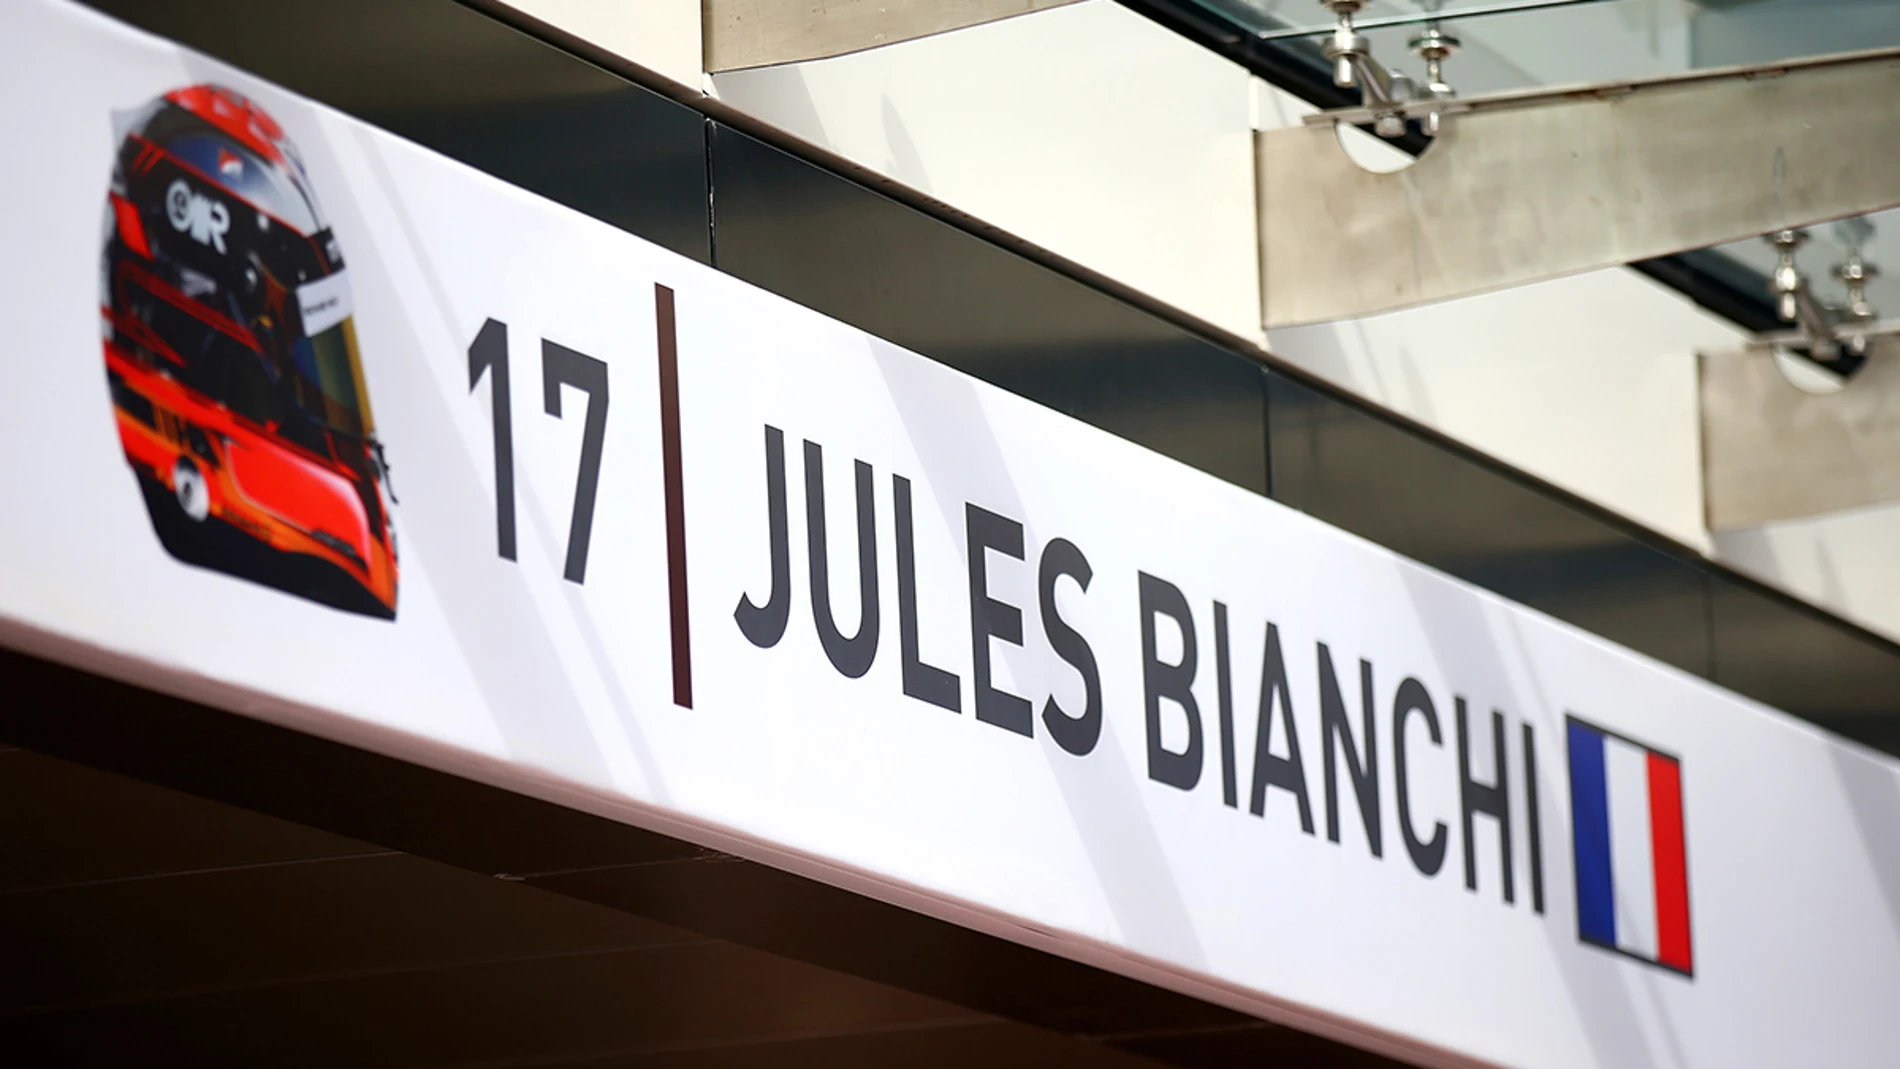 Box de Jules Bianchi con el número 17